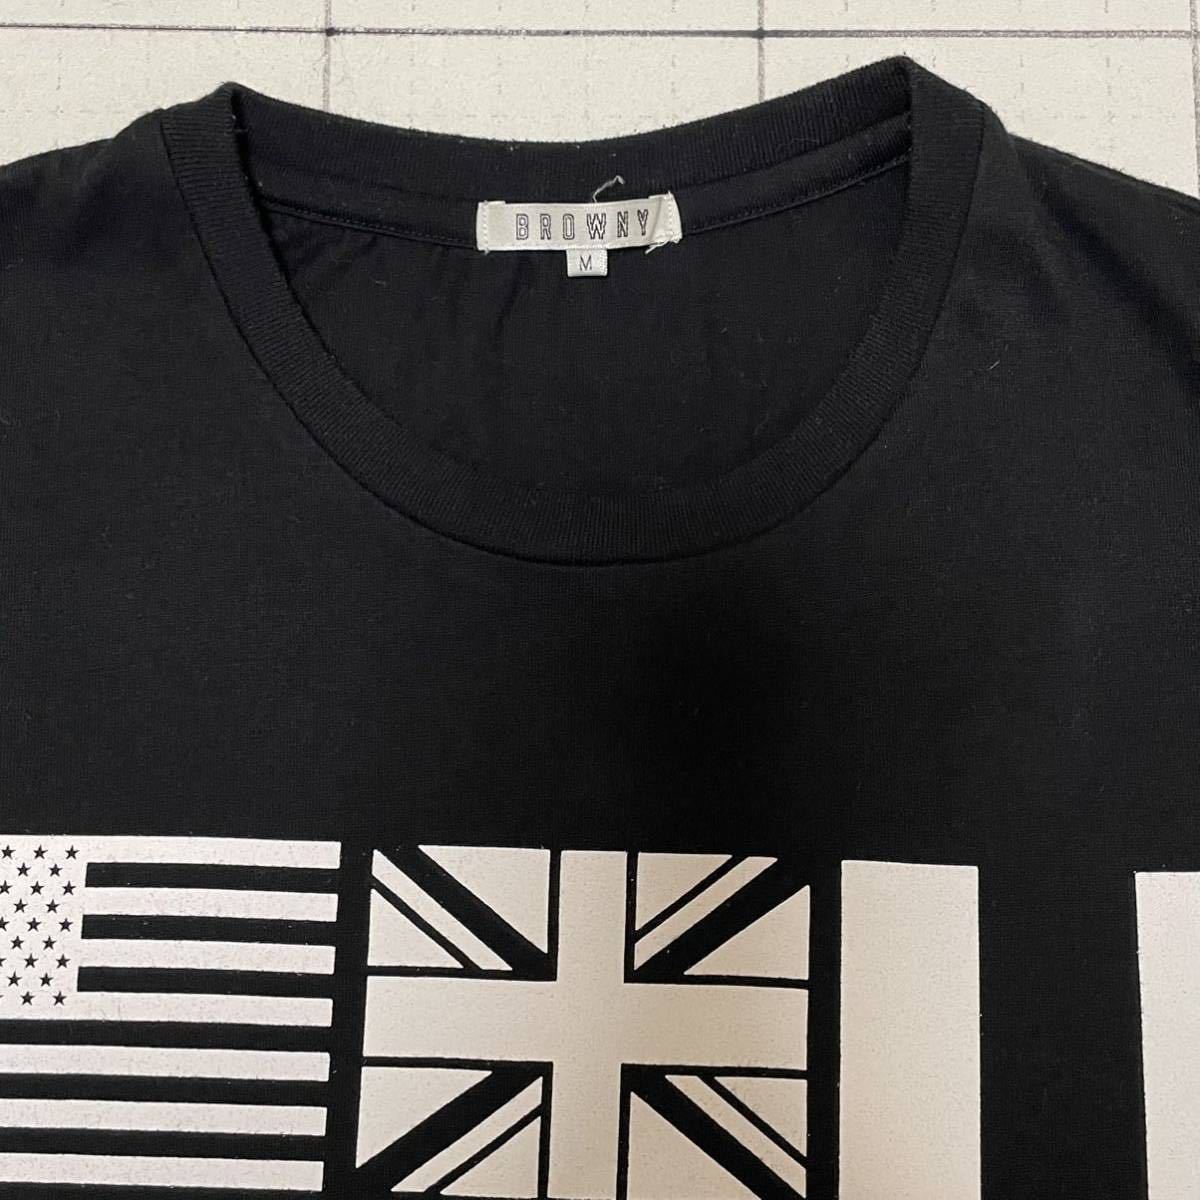 良品 ブラウニー【BROWNY】半袖Tシャツ 歴史的な世界の国旗イラスト ロゴ Mサイズ ブラック×ホワイト/黒白 バイカラー ブラジル カナダの画像3